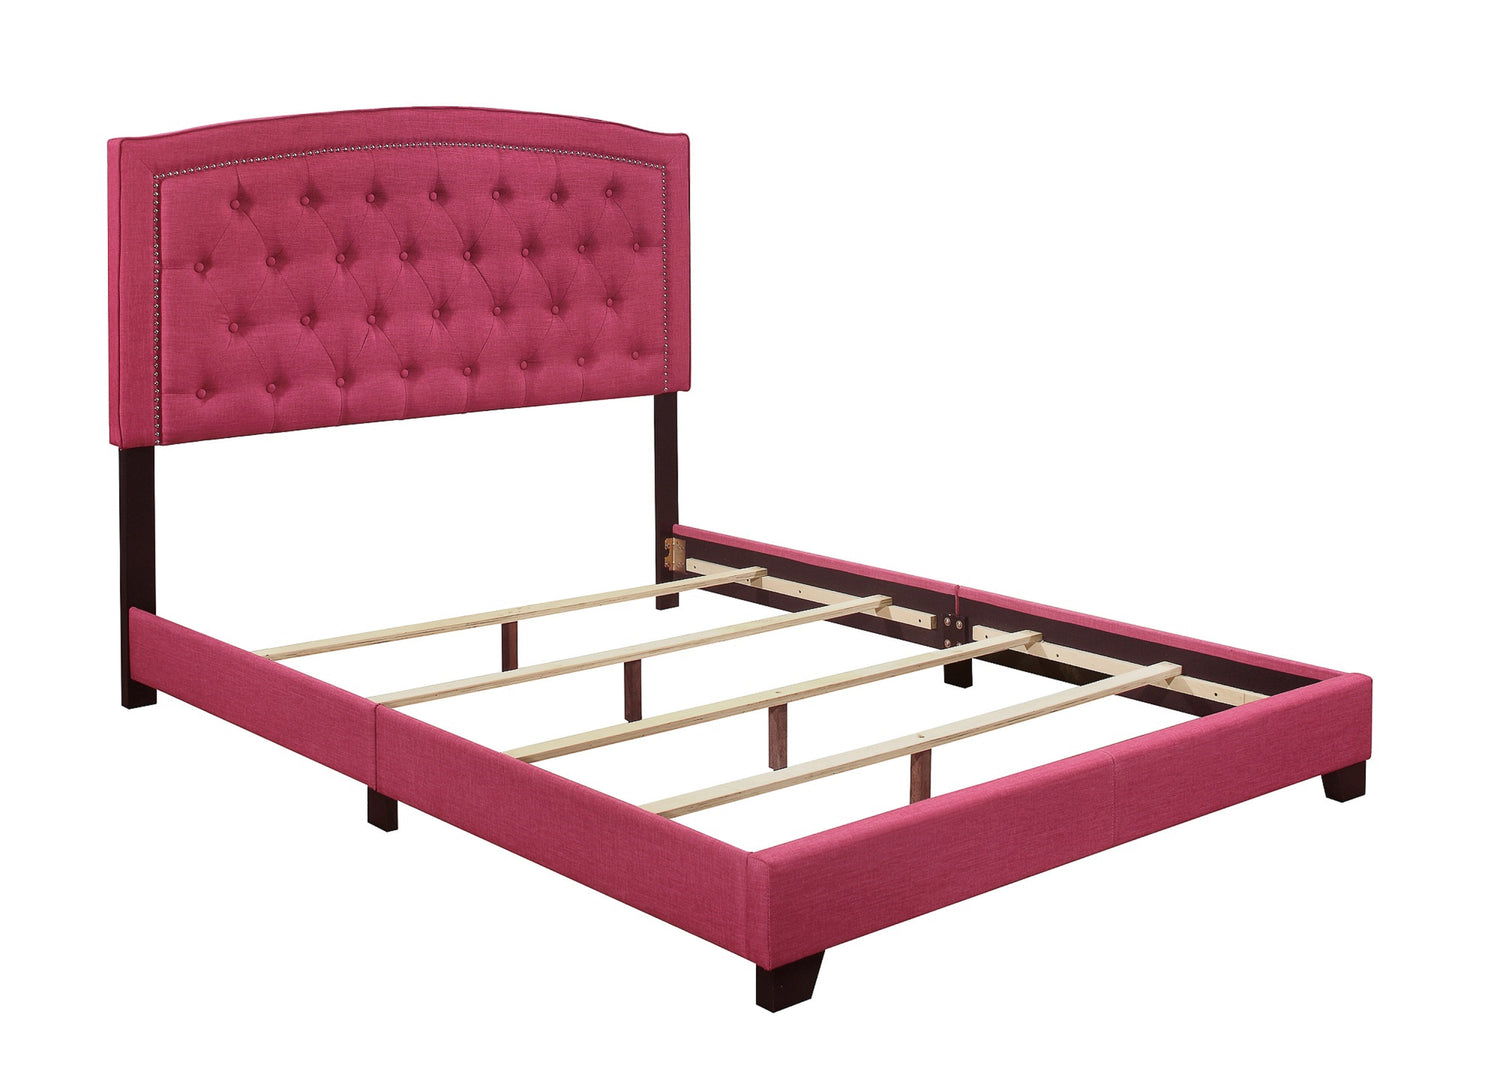 Linda Pink Full Upholstered Bed - SH275FPNK-1 - Bien Home Furniture &amp; Electronics